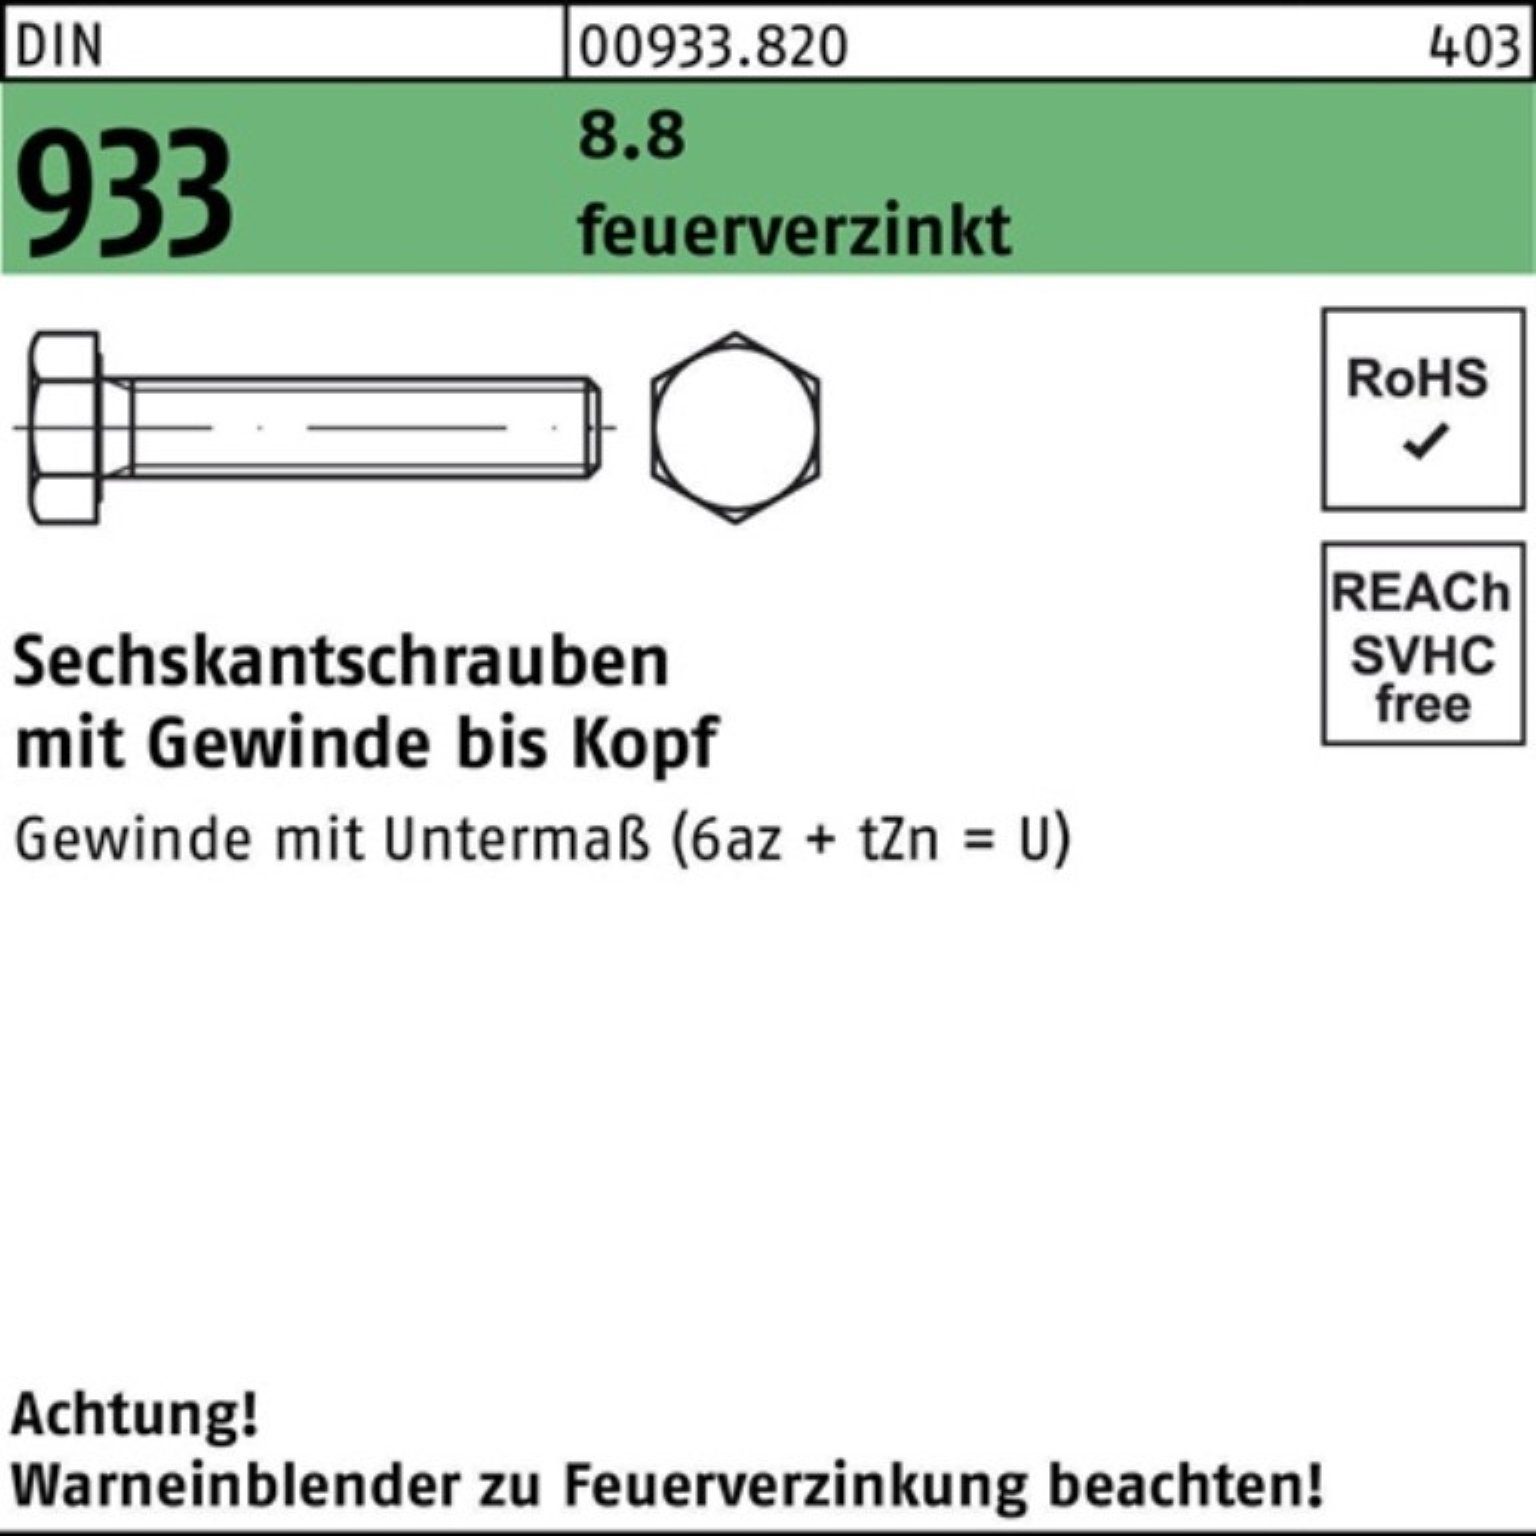 Stüc 80 1 Sechskantschraube M30x Pack DIN feuerverz. 8.8 VG 100er 933 Reyher Sechskantschraube